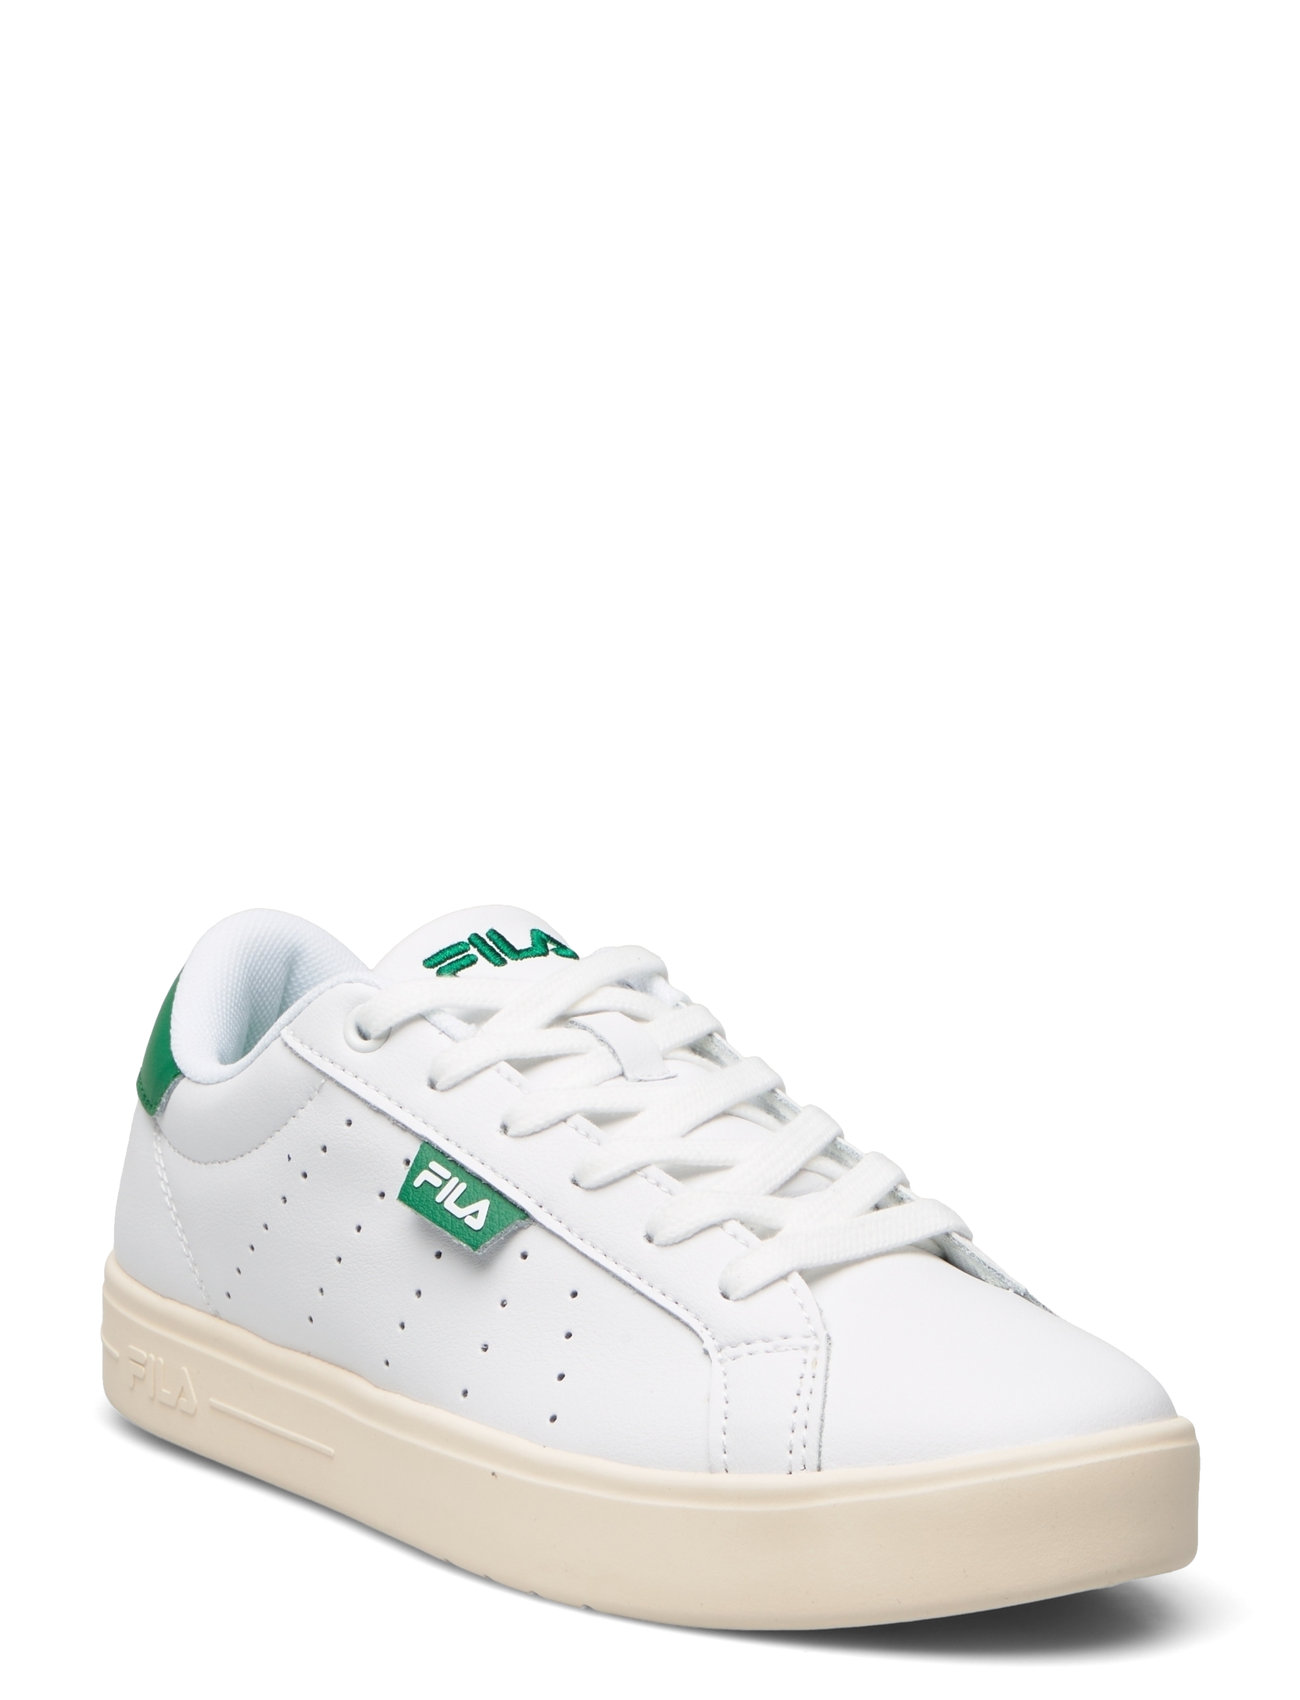 Fila Lusso Cb Wmn Sport Sneakers Low-top Sneakers White FILA